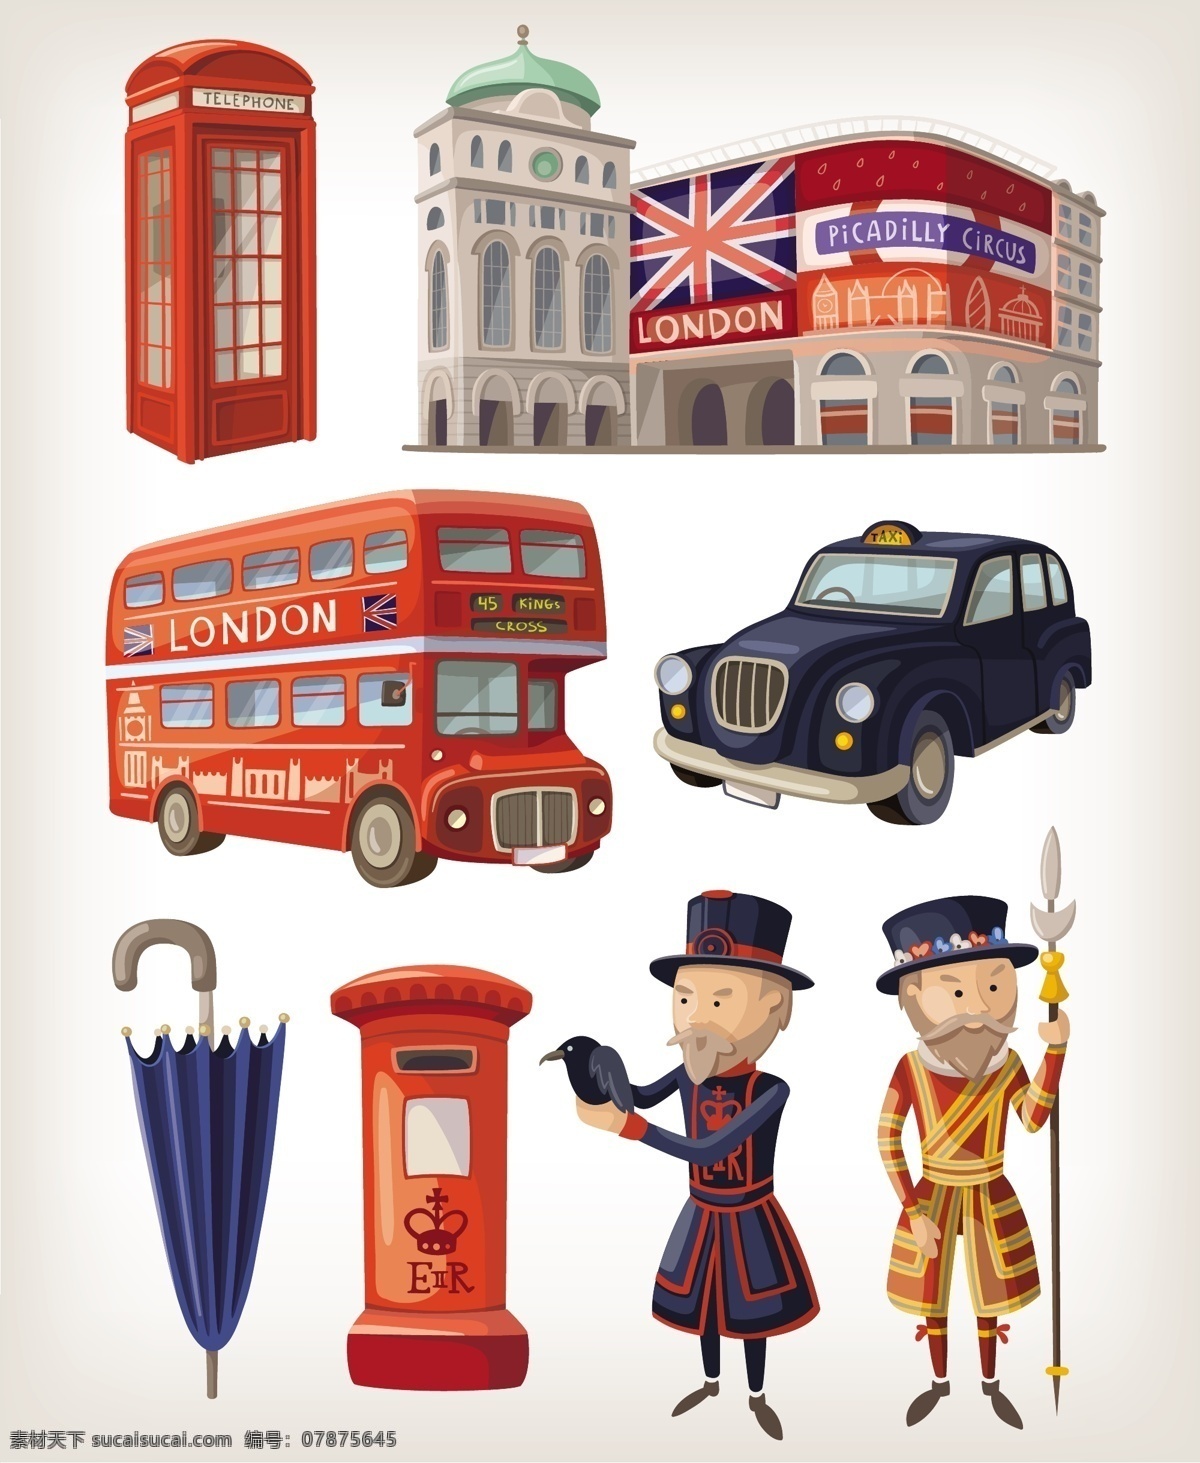 伦敦 元素 eps格式 出租车 电话亭 旅行 矢量图 士兵 英国 邮筒 雨伞 精美 矢量 双层巴士